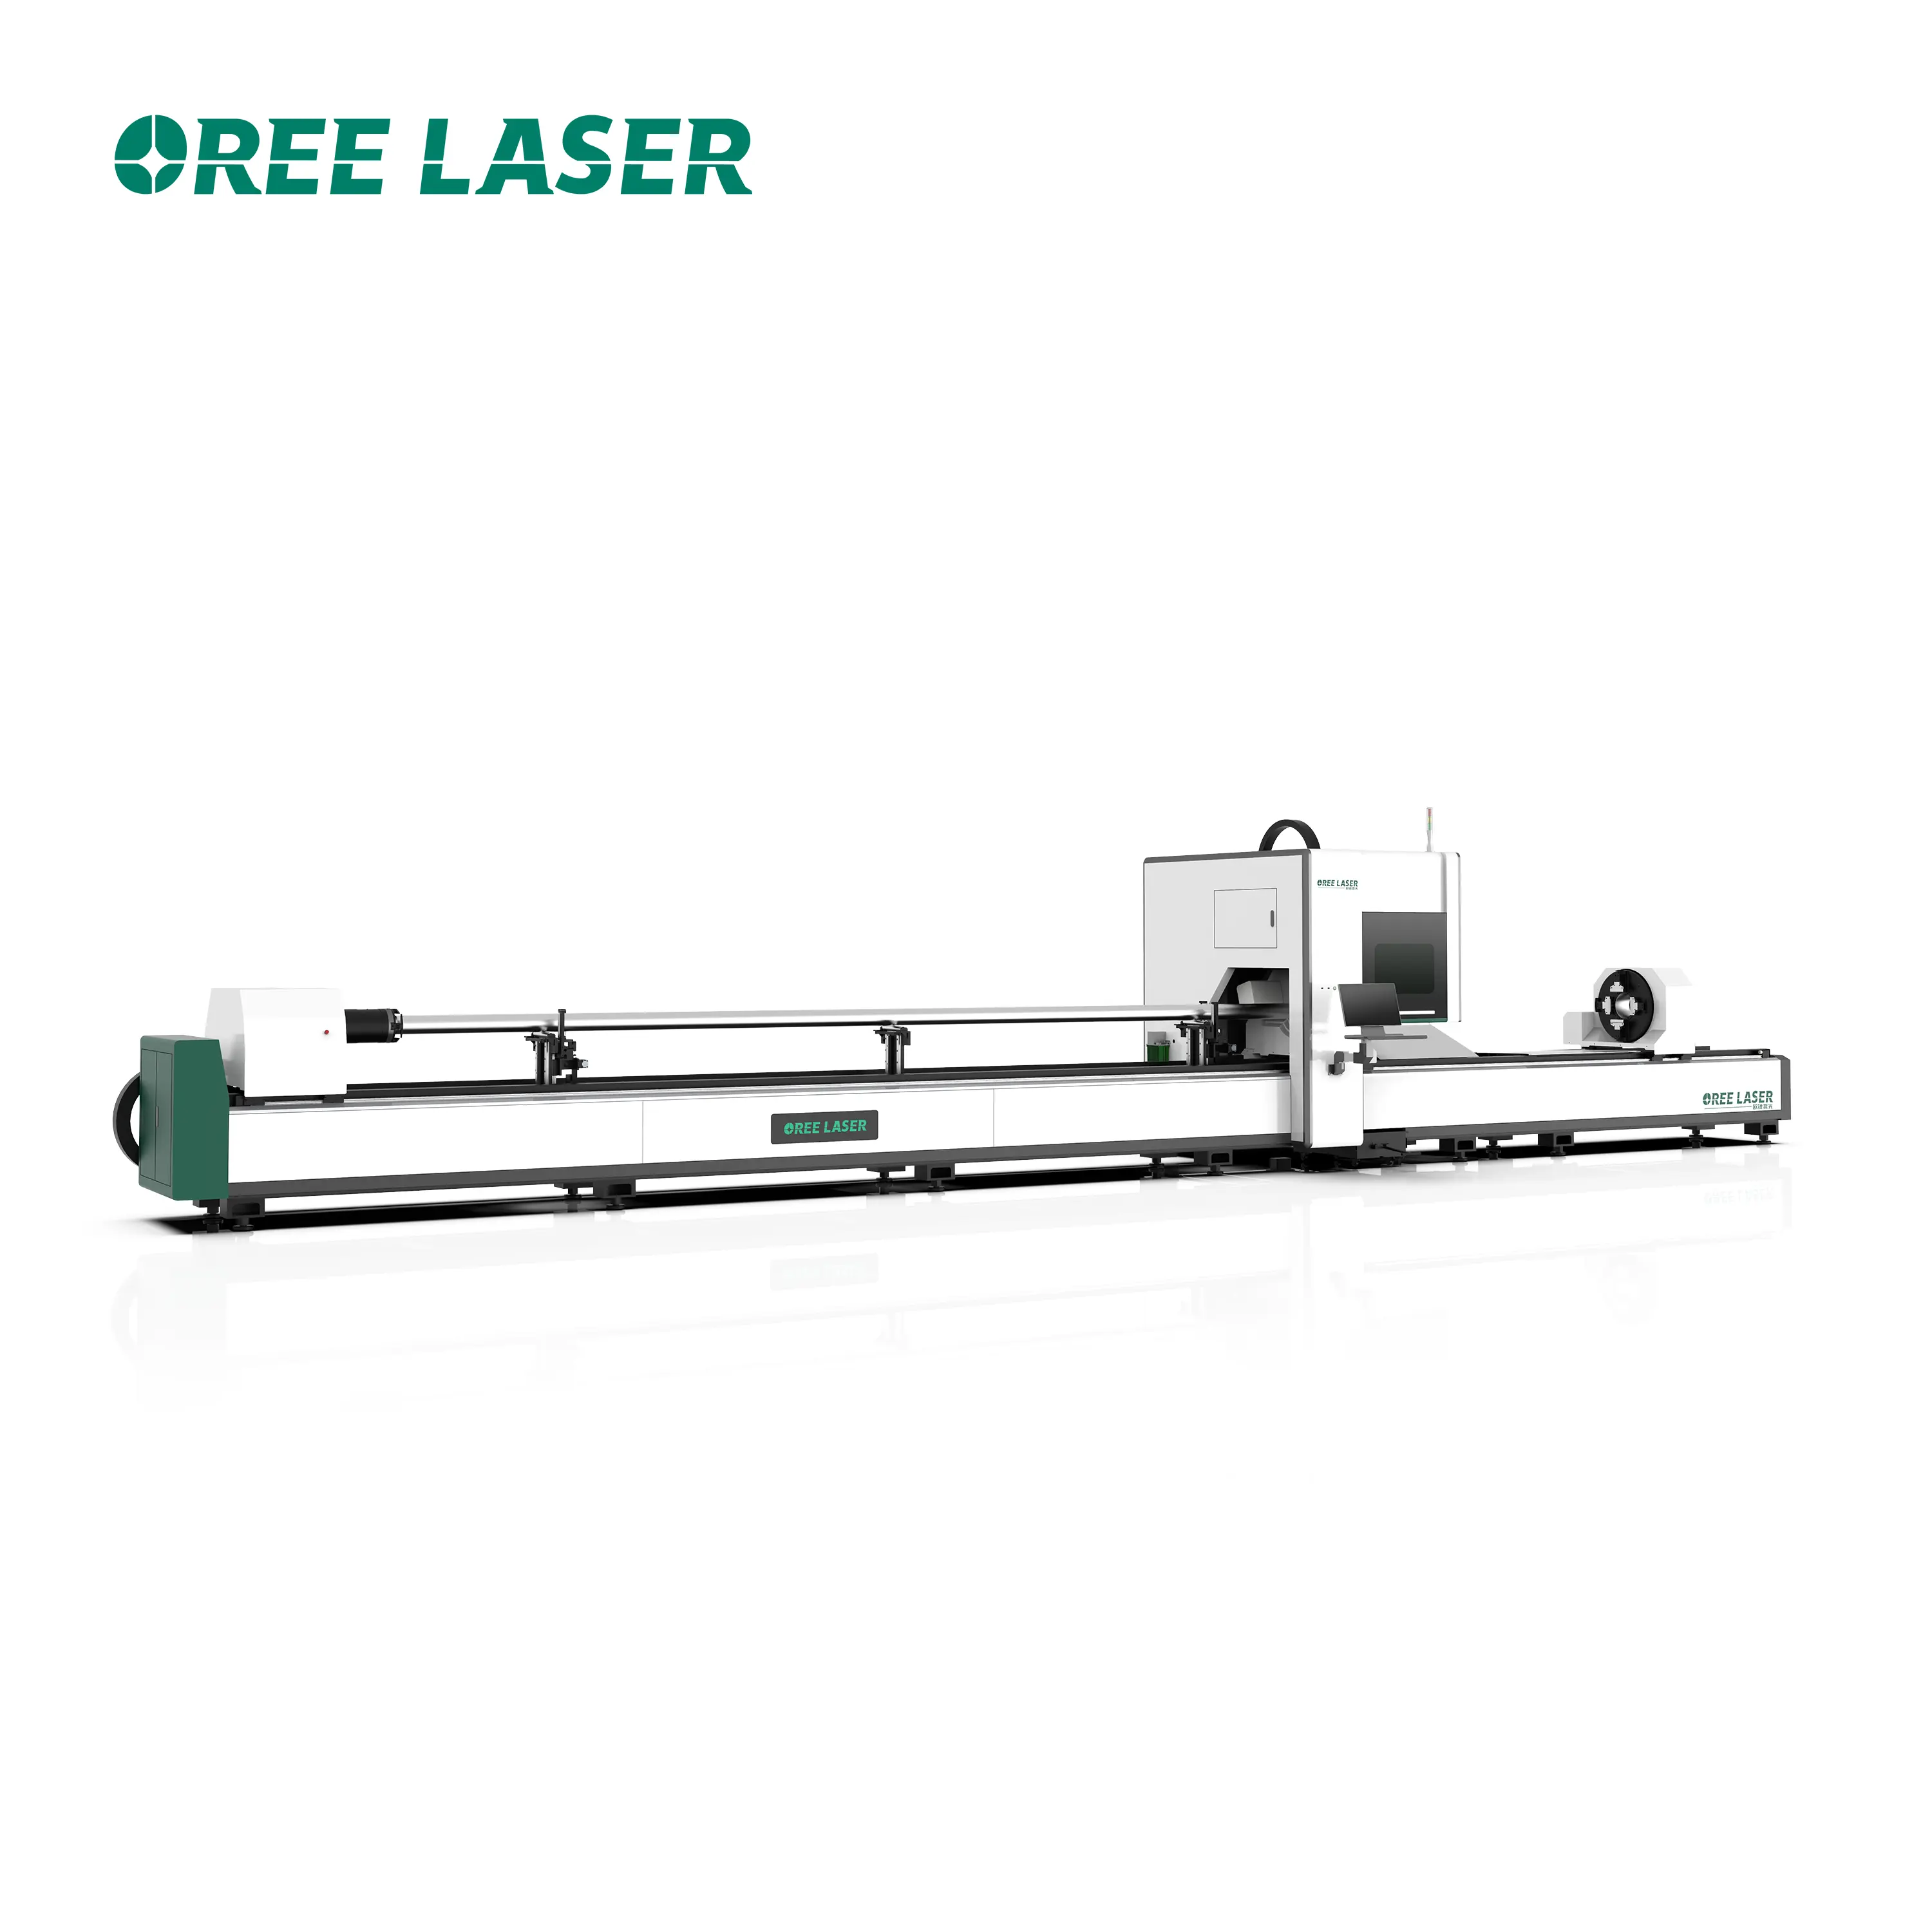 2023 Oree Factory Sales Promotions von Lasers chneid maschinen Metallfaser-Laser rohrs chneide maschine